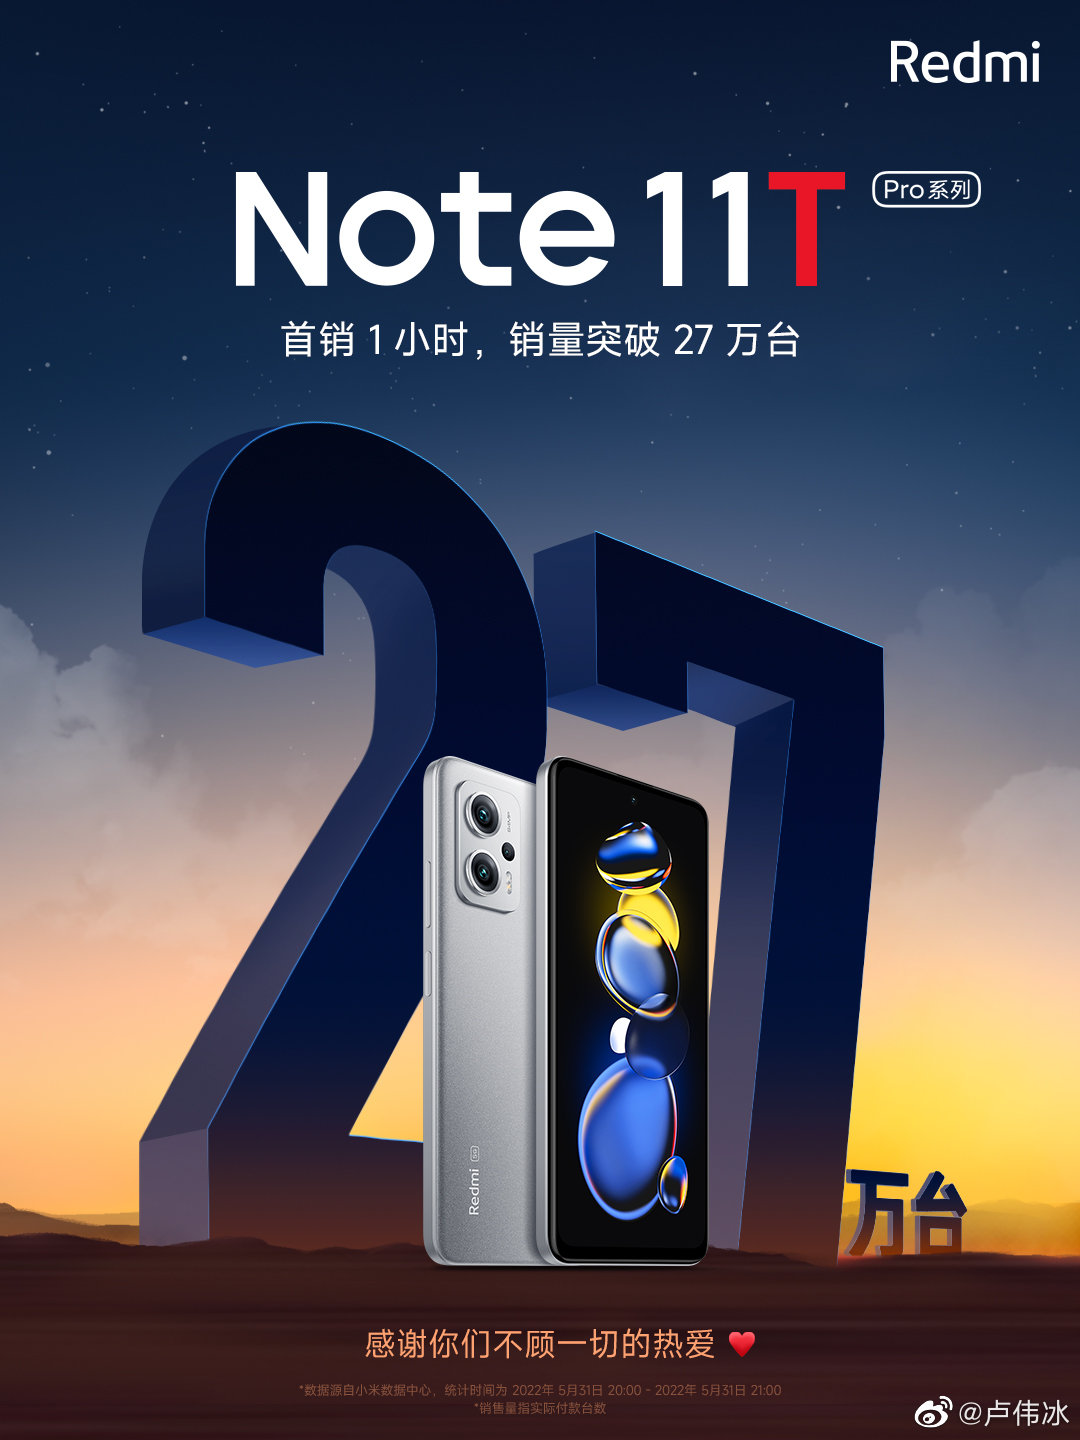 Redmi Note 11T Pro seris first sale